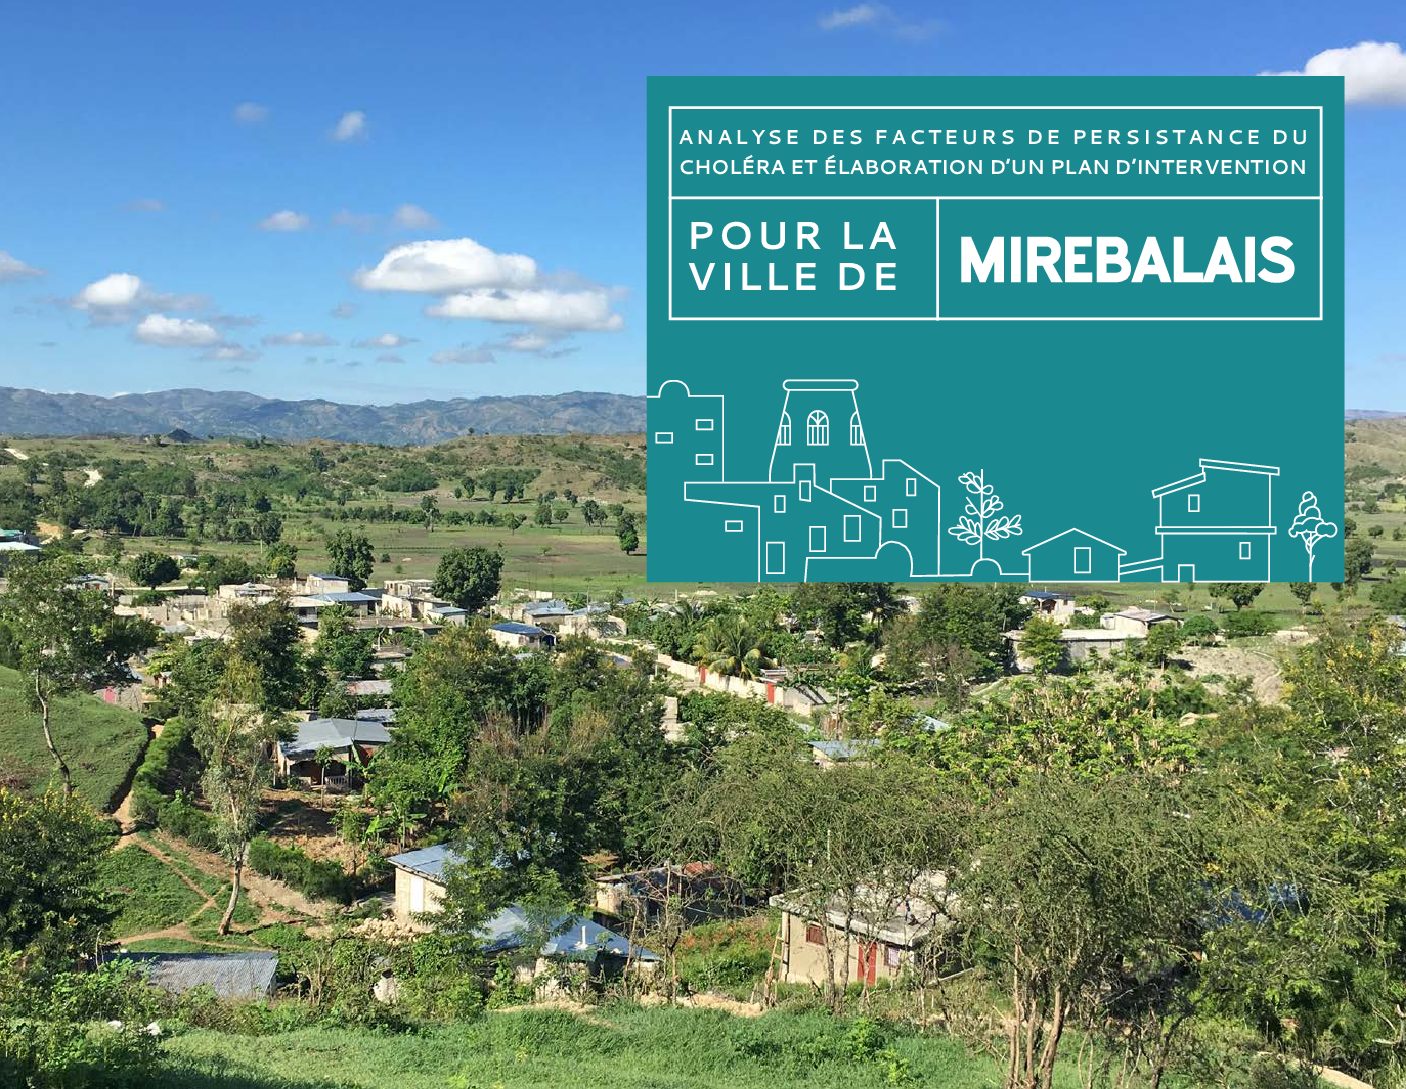 Analyse des facteurs de persistance du choléra et élaboration d’un plan d’intervention – Mirebalais